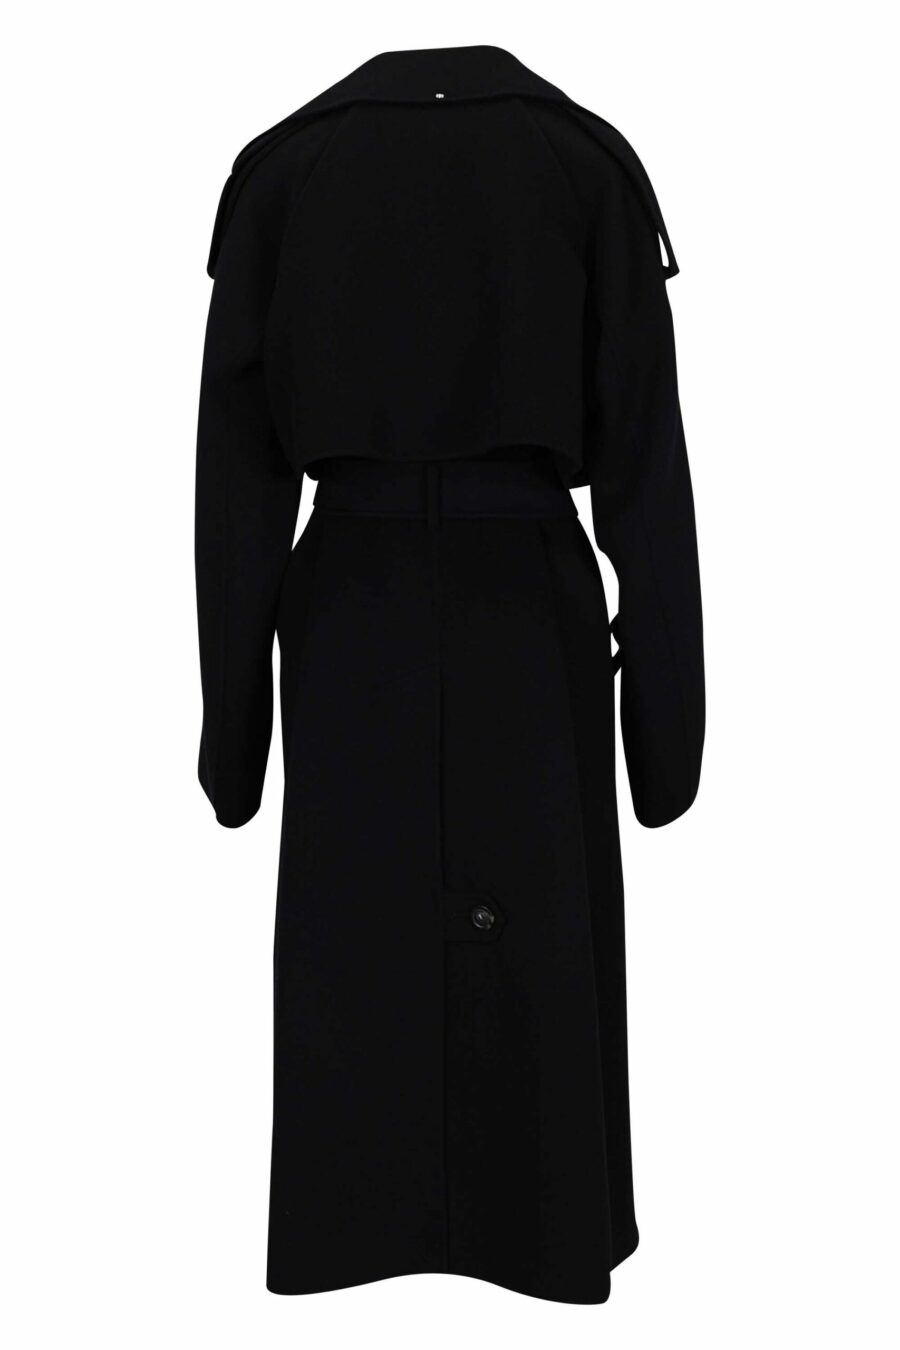 Abrigo negro largo de lana - 20110541060132 2 scaled